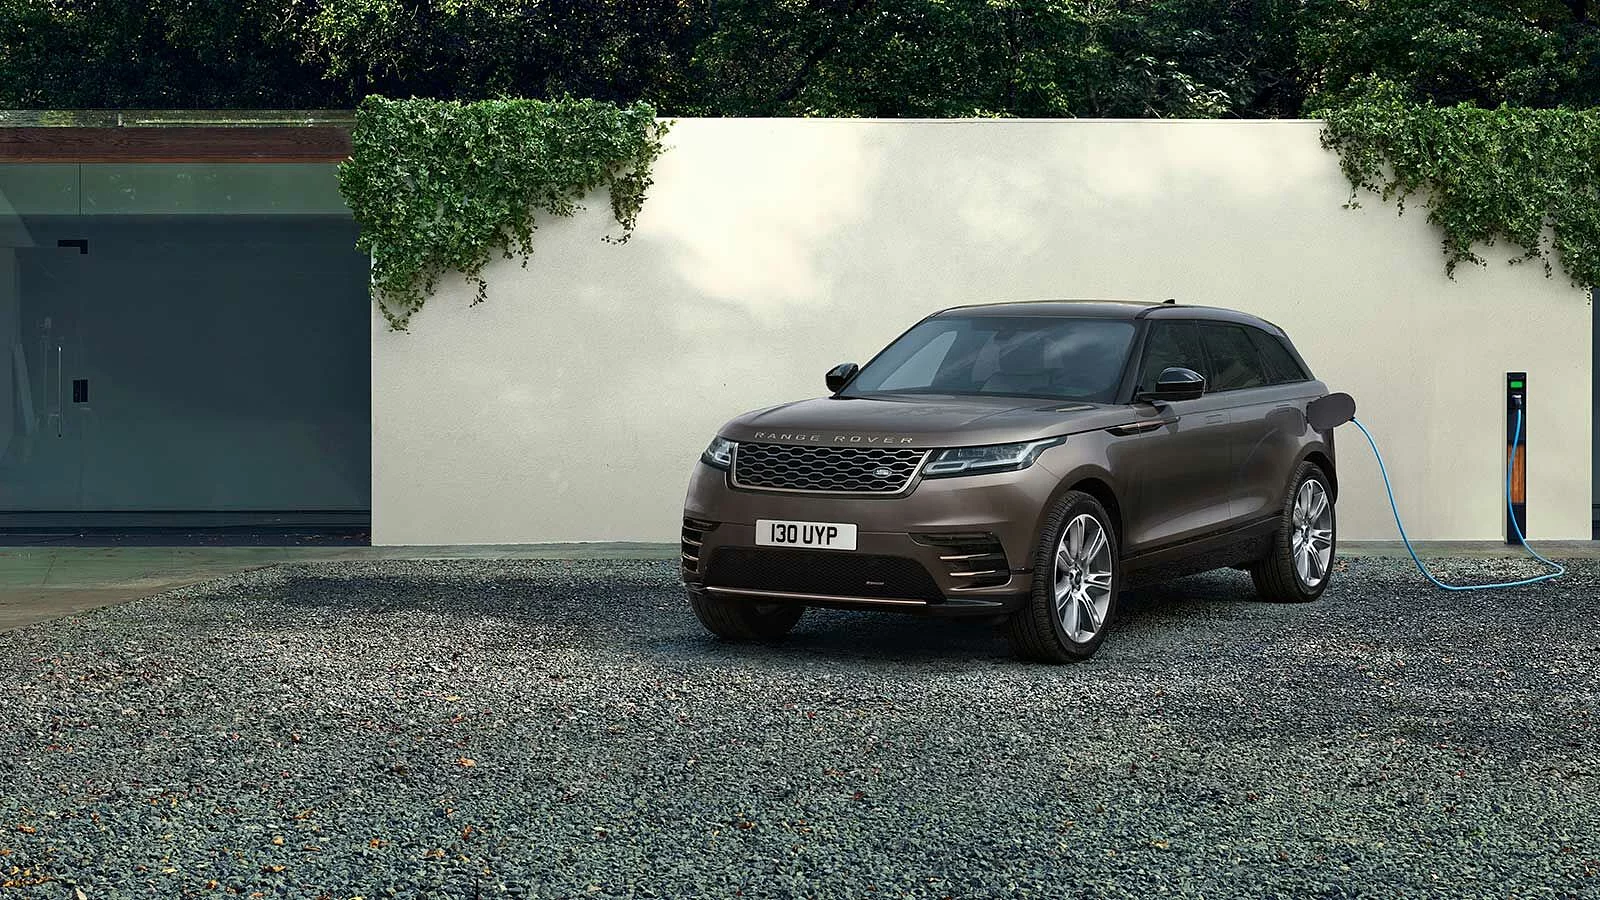 Harga Range Rover Velar Terbaru, Spesifikasi dan Interior 2022!